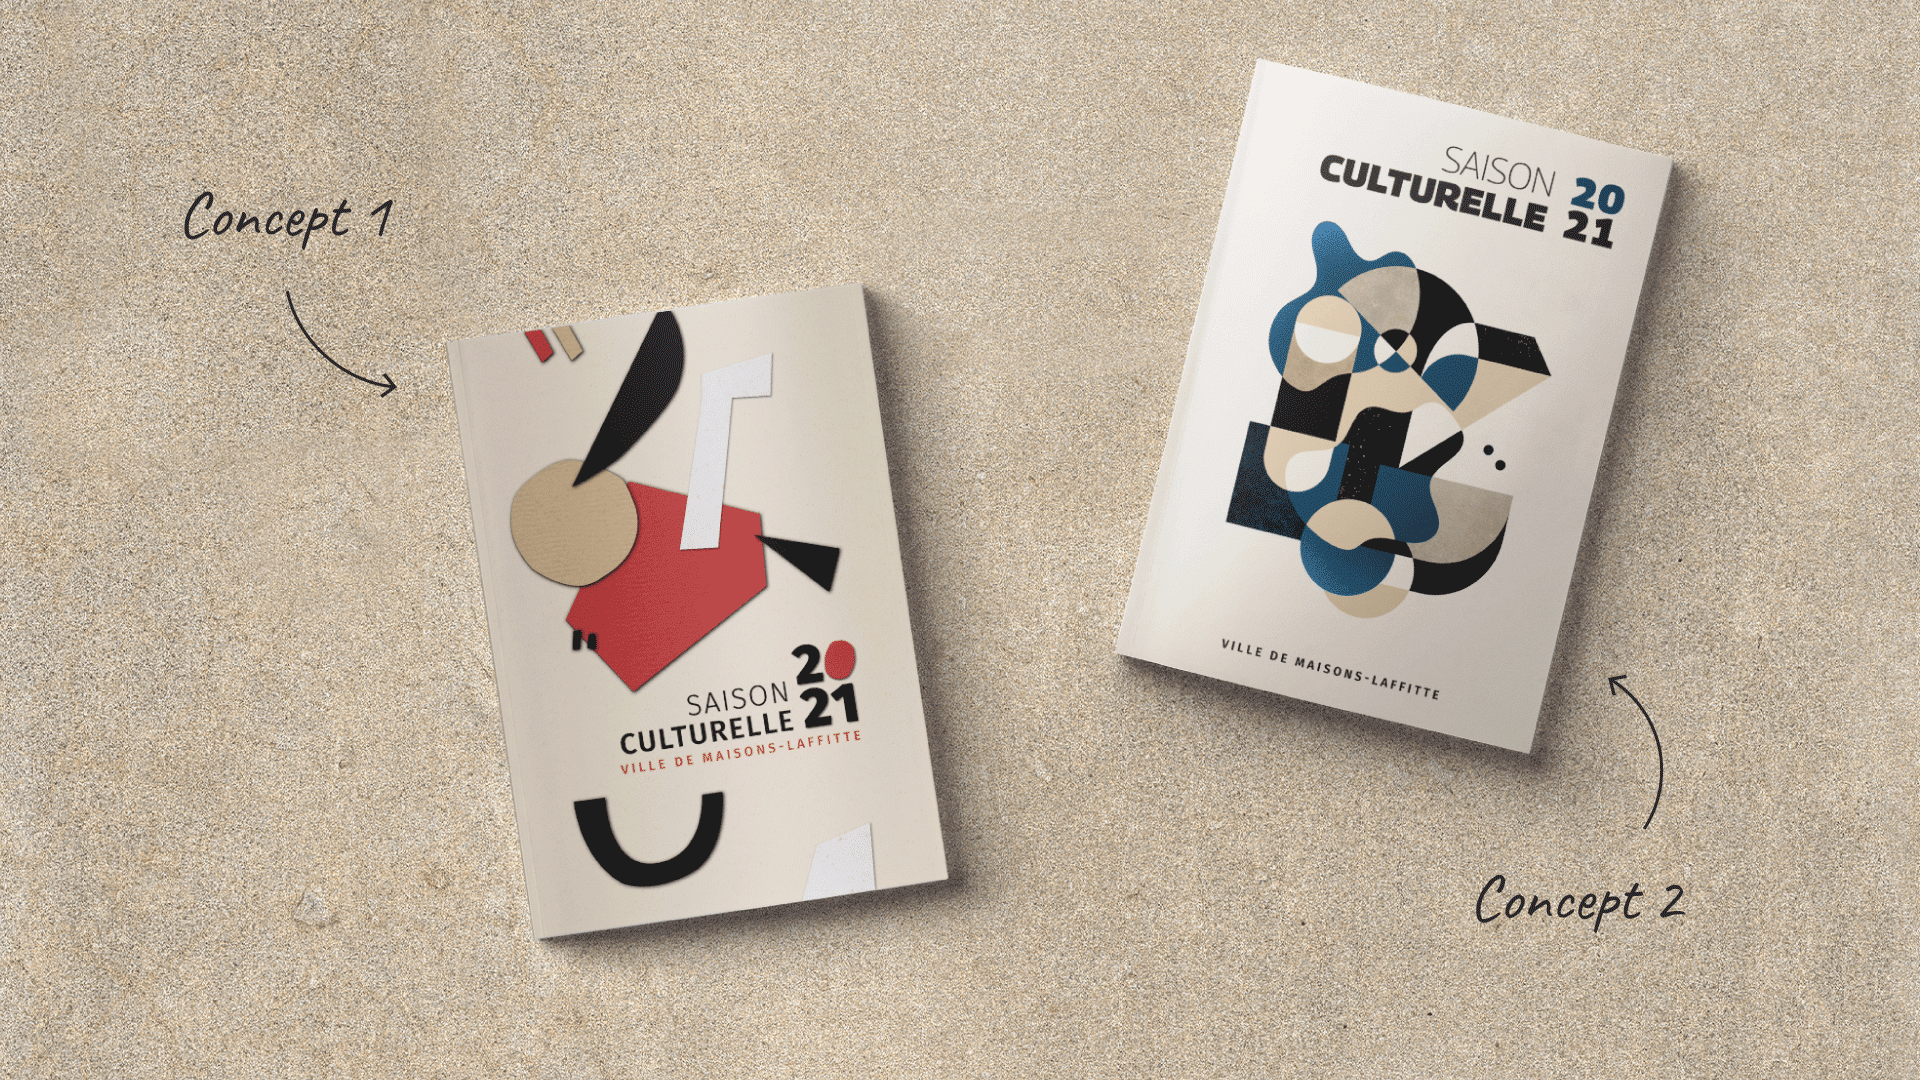 Deux pages de couverture différentes du programme culturel de Maisons-Laffitte